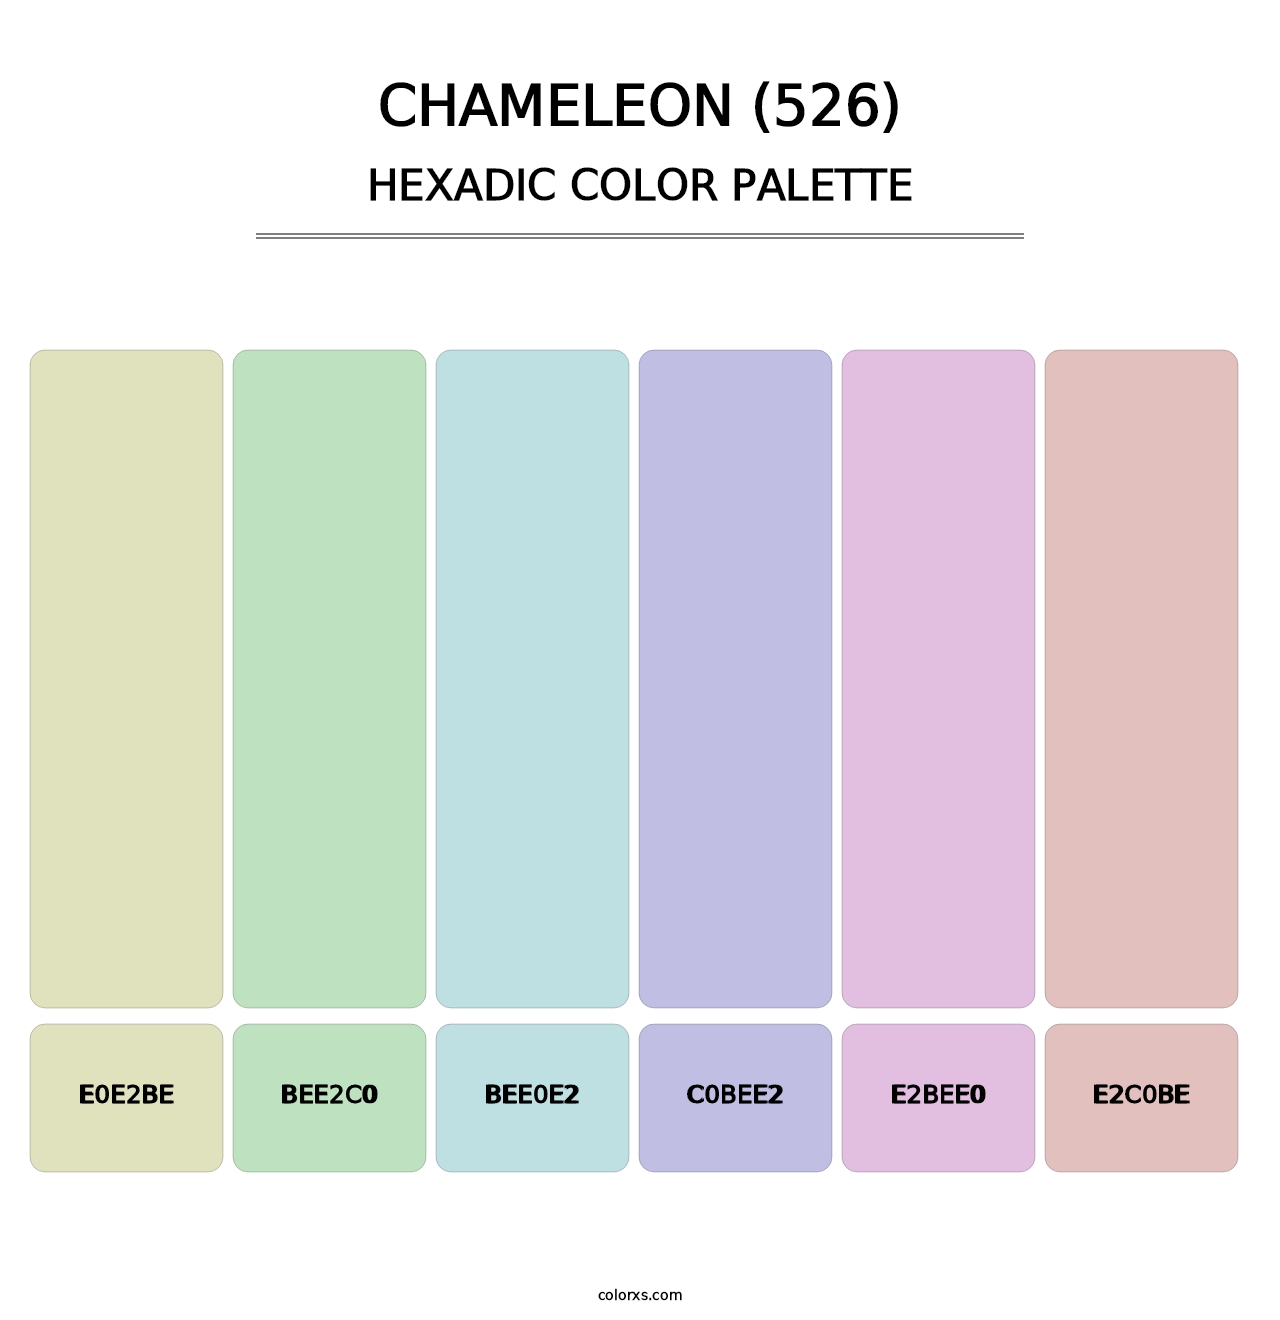 Chameleon (526) - Hexadic Color Palette